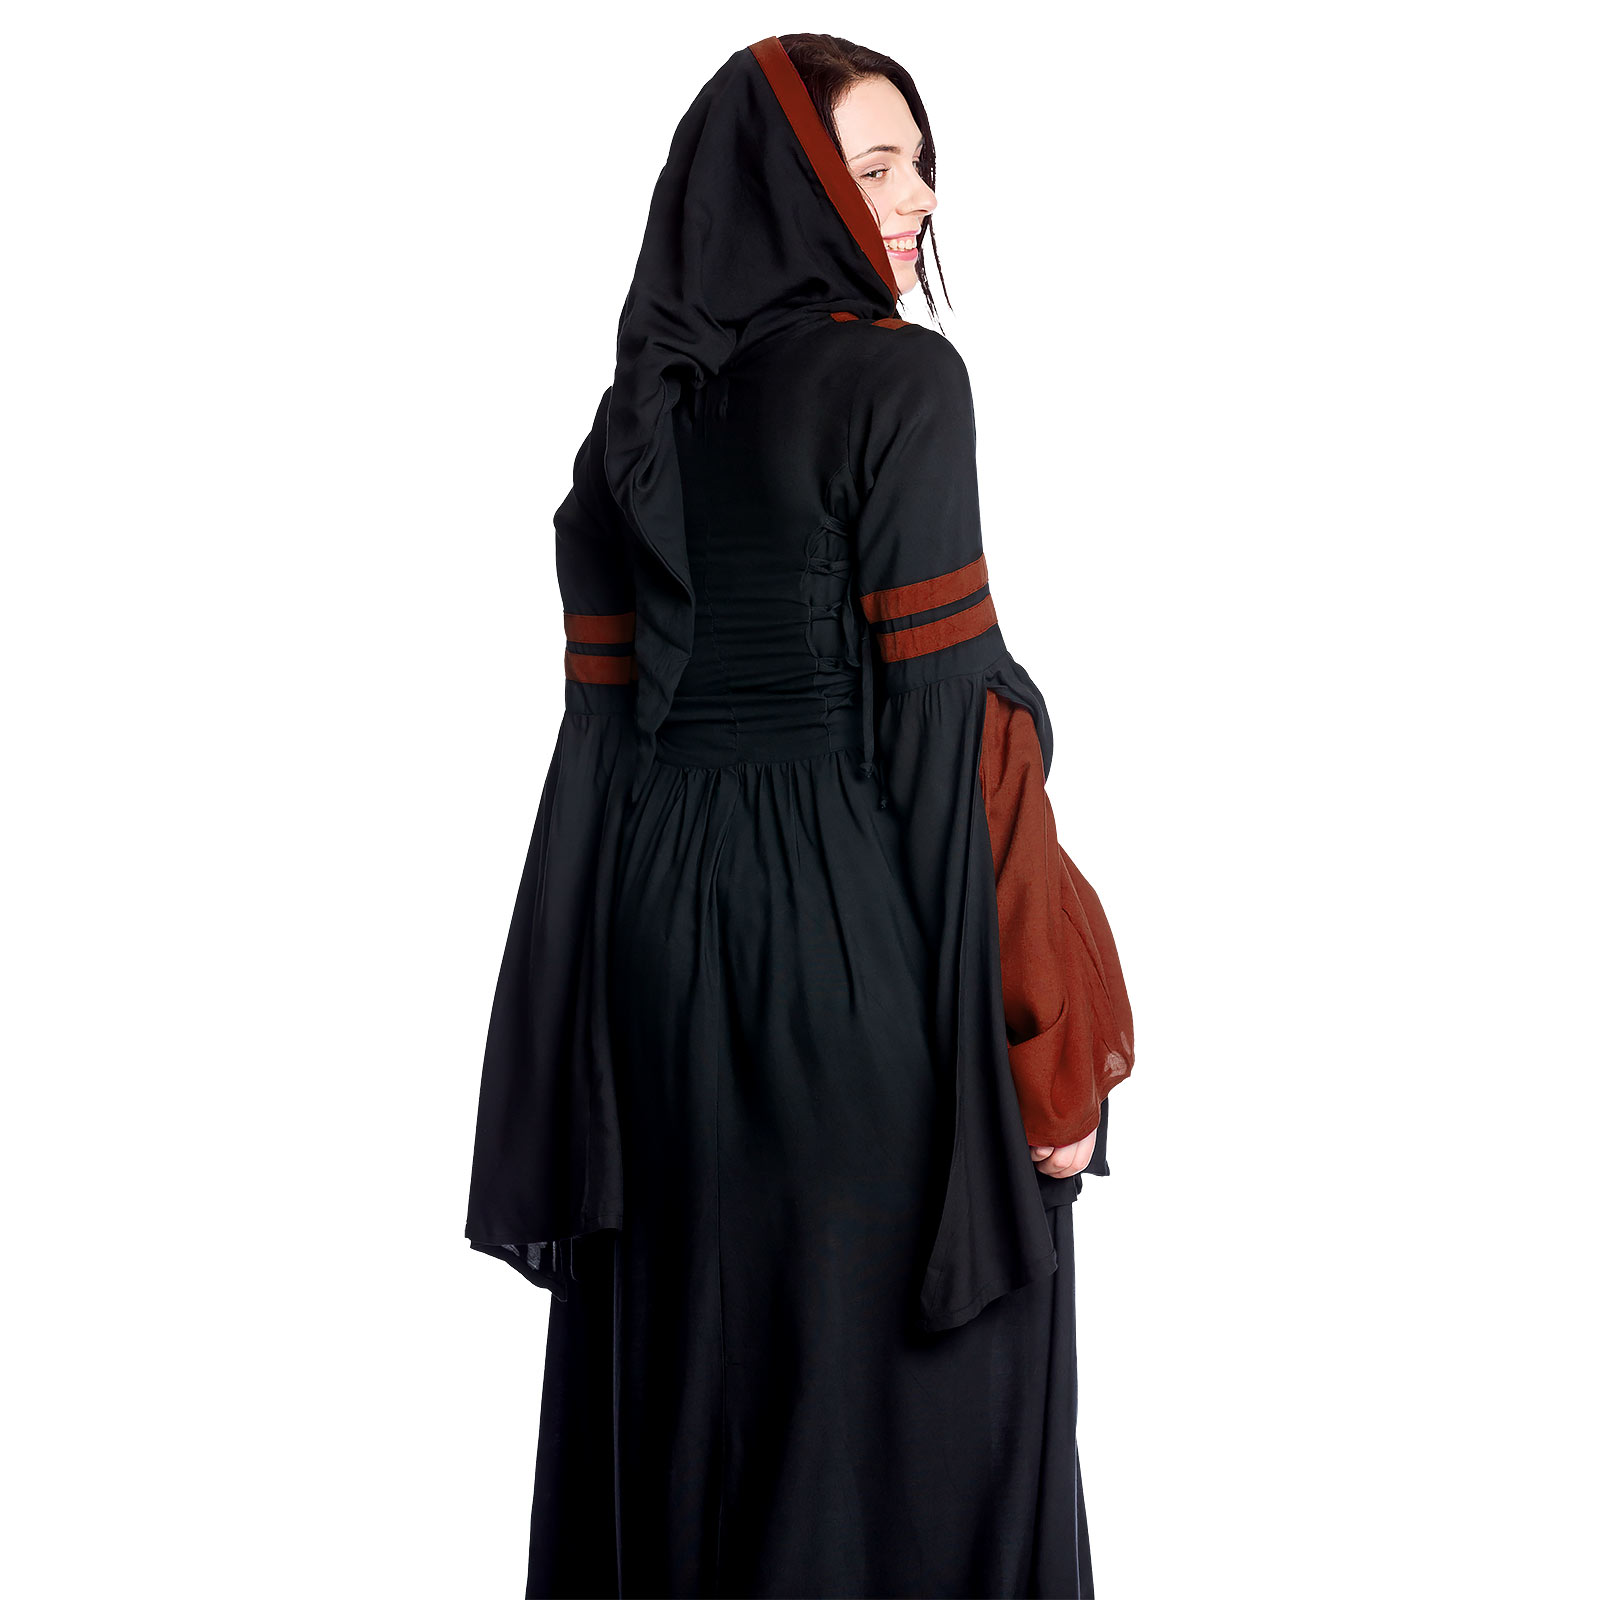 Middeleeuwse Capuchonjurk Isolde Zwart-Rood